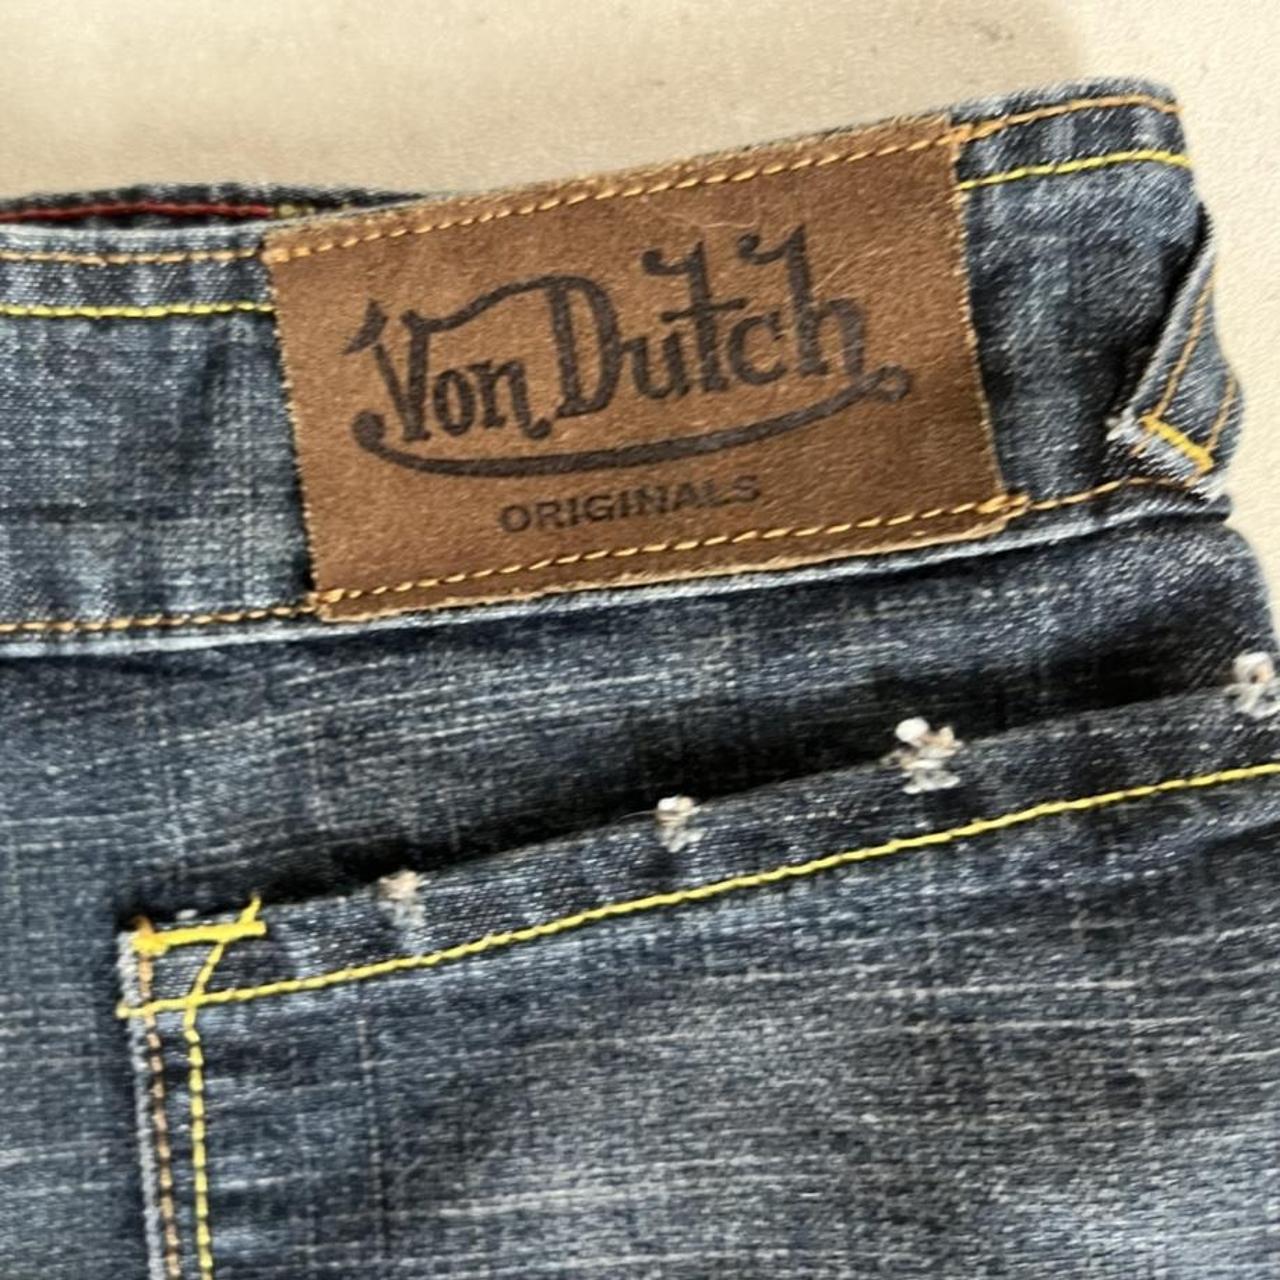 Von Dutch Women's Skirt | Depop